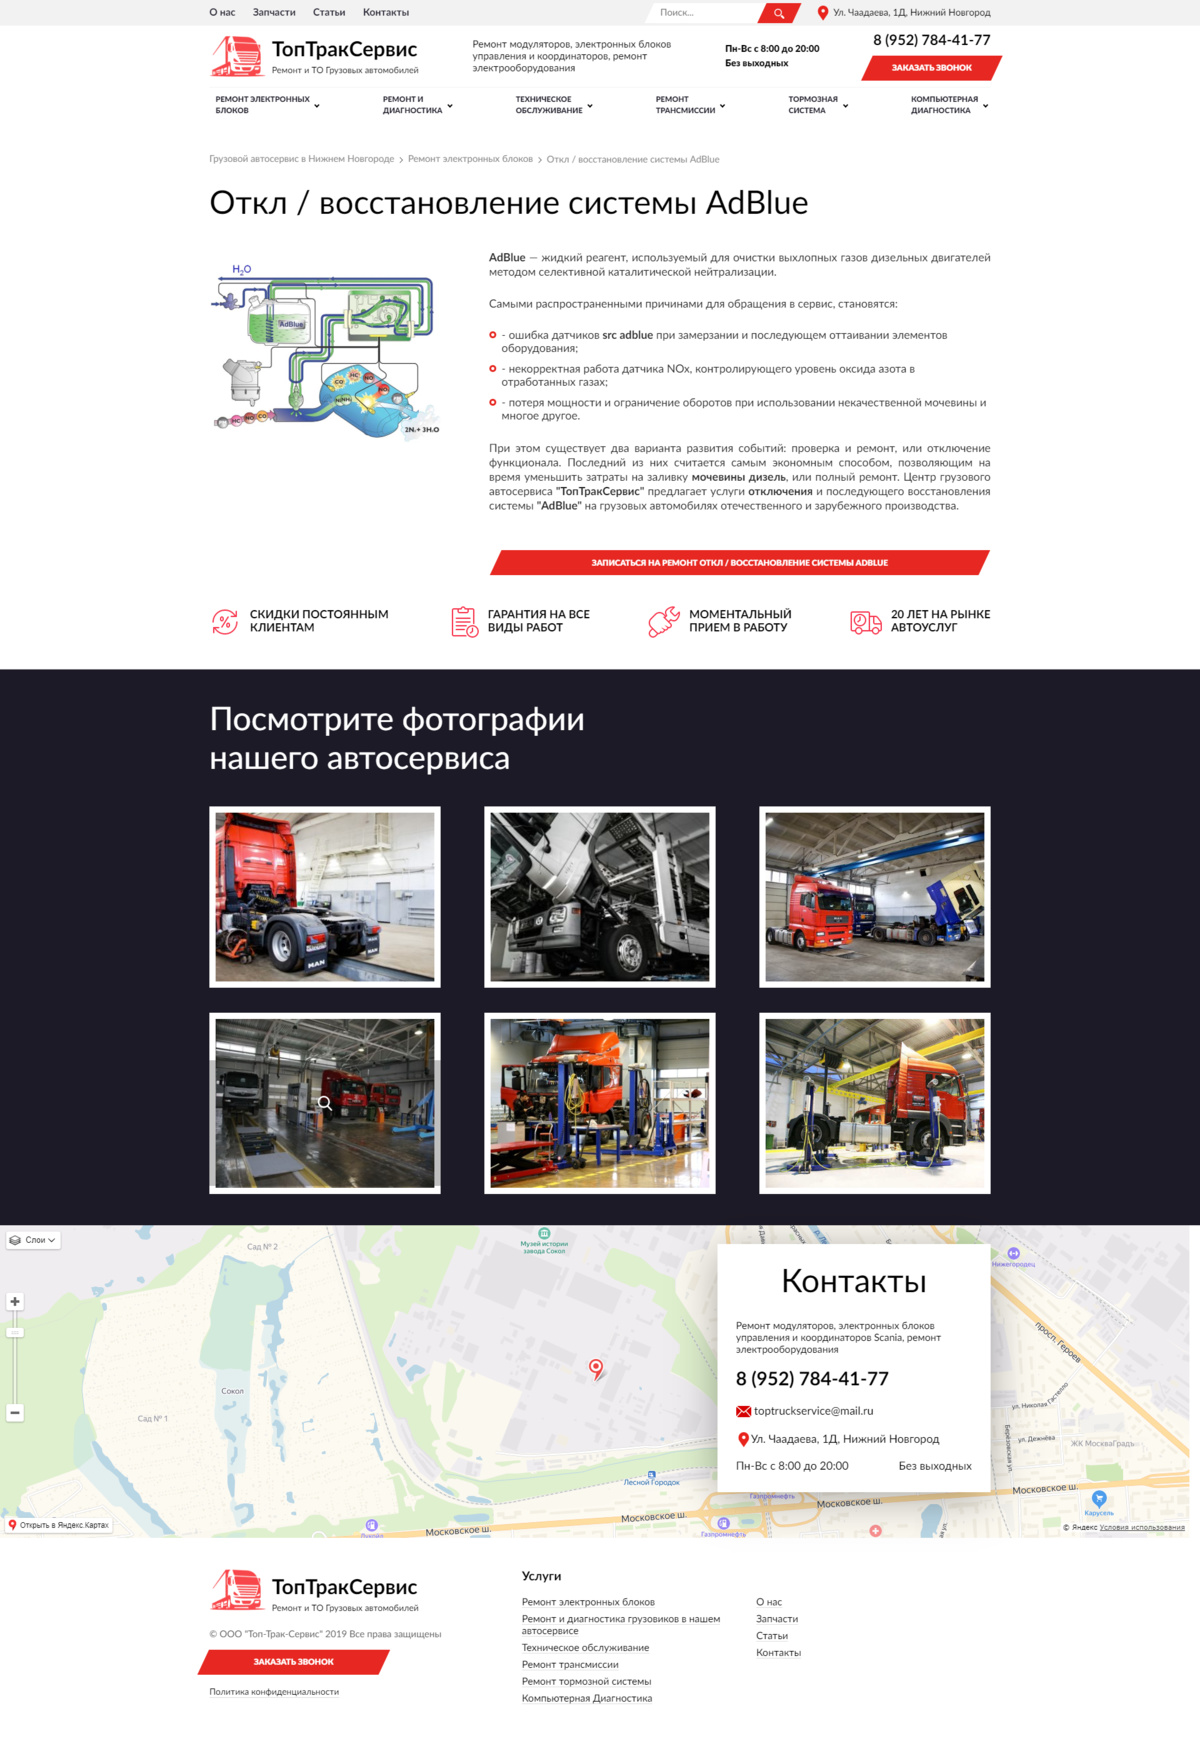 Топтраксервис - сайт грузового автосервиса